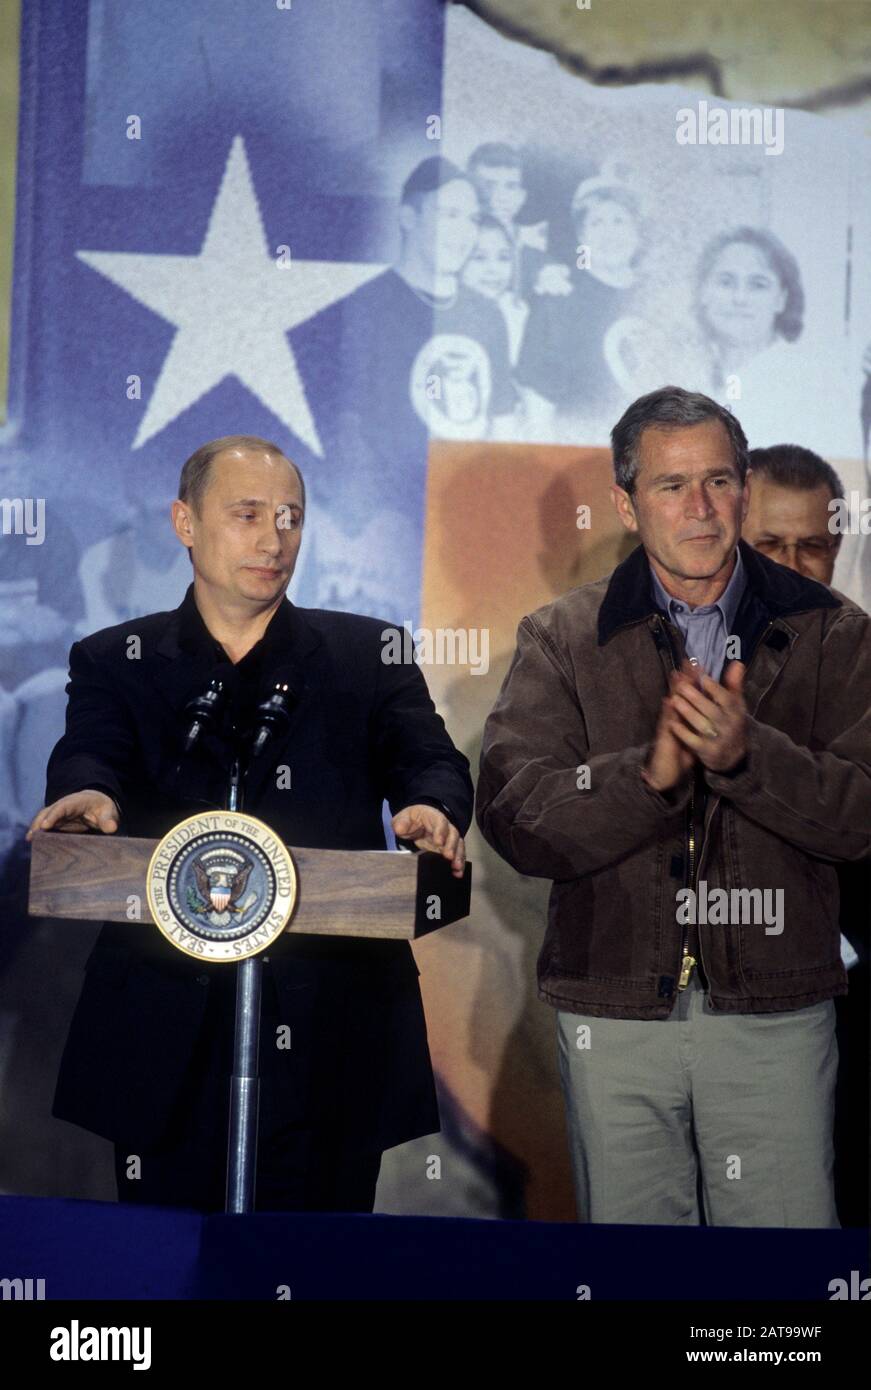 Crawford, Texas États-Unis: Le président russe Vladimir Poutine, le président américain George W. Bush à la conférence de presse tenue à Crawford, Texas, High School près du ranch du président du Texas. Novembre 2001. ©Bob Daemmrich Banque D'Images